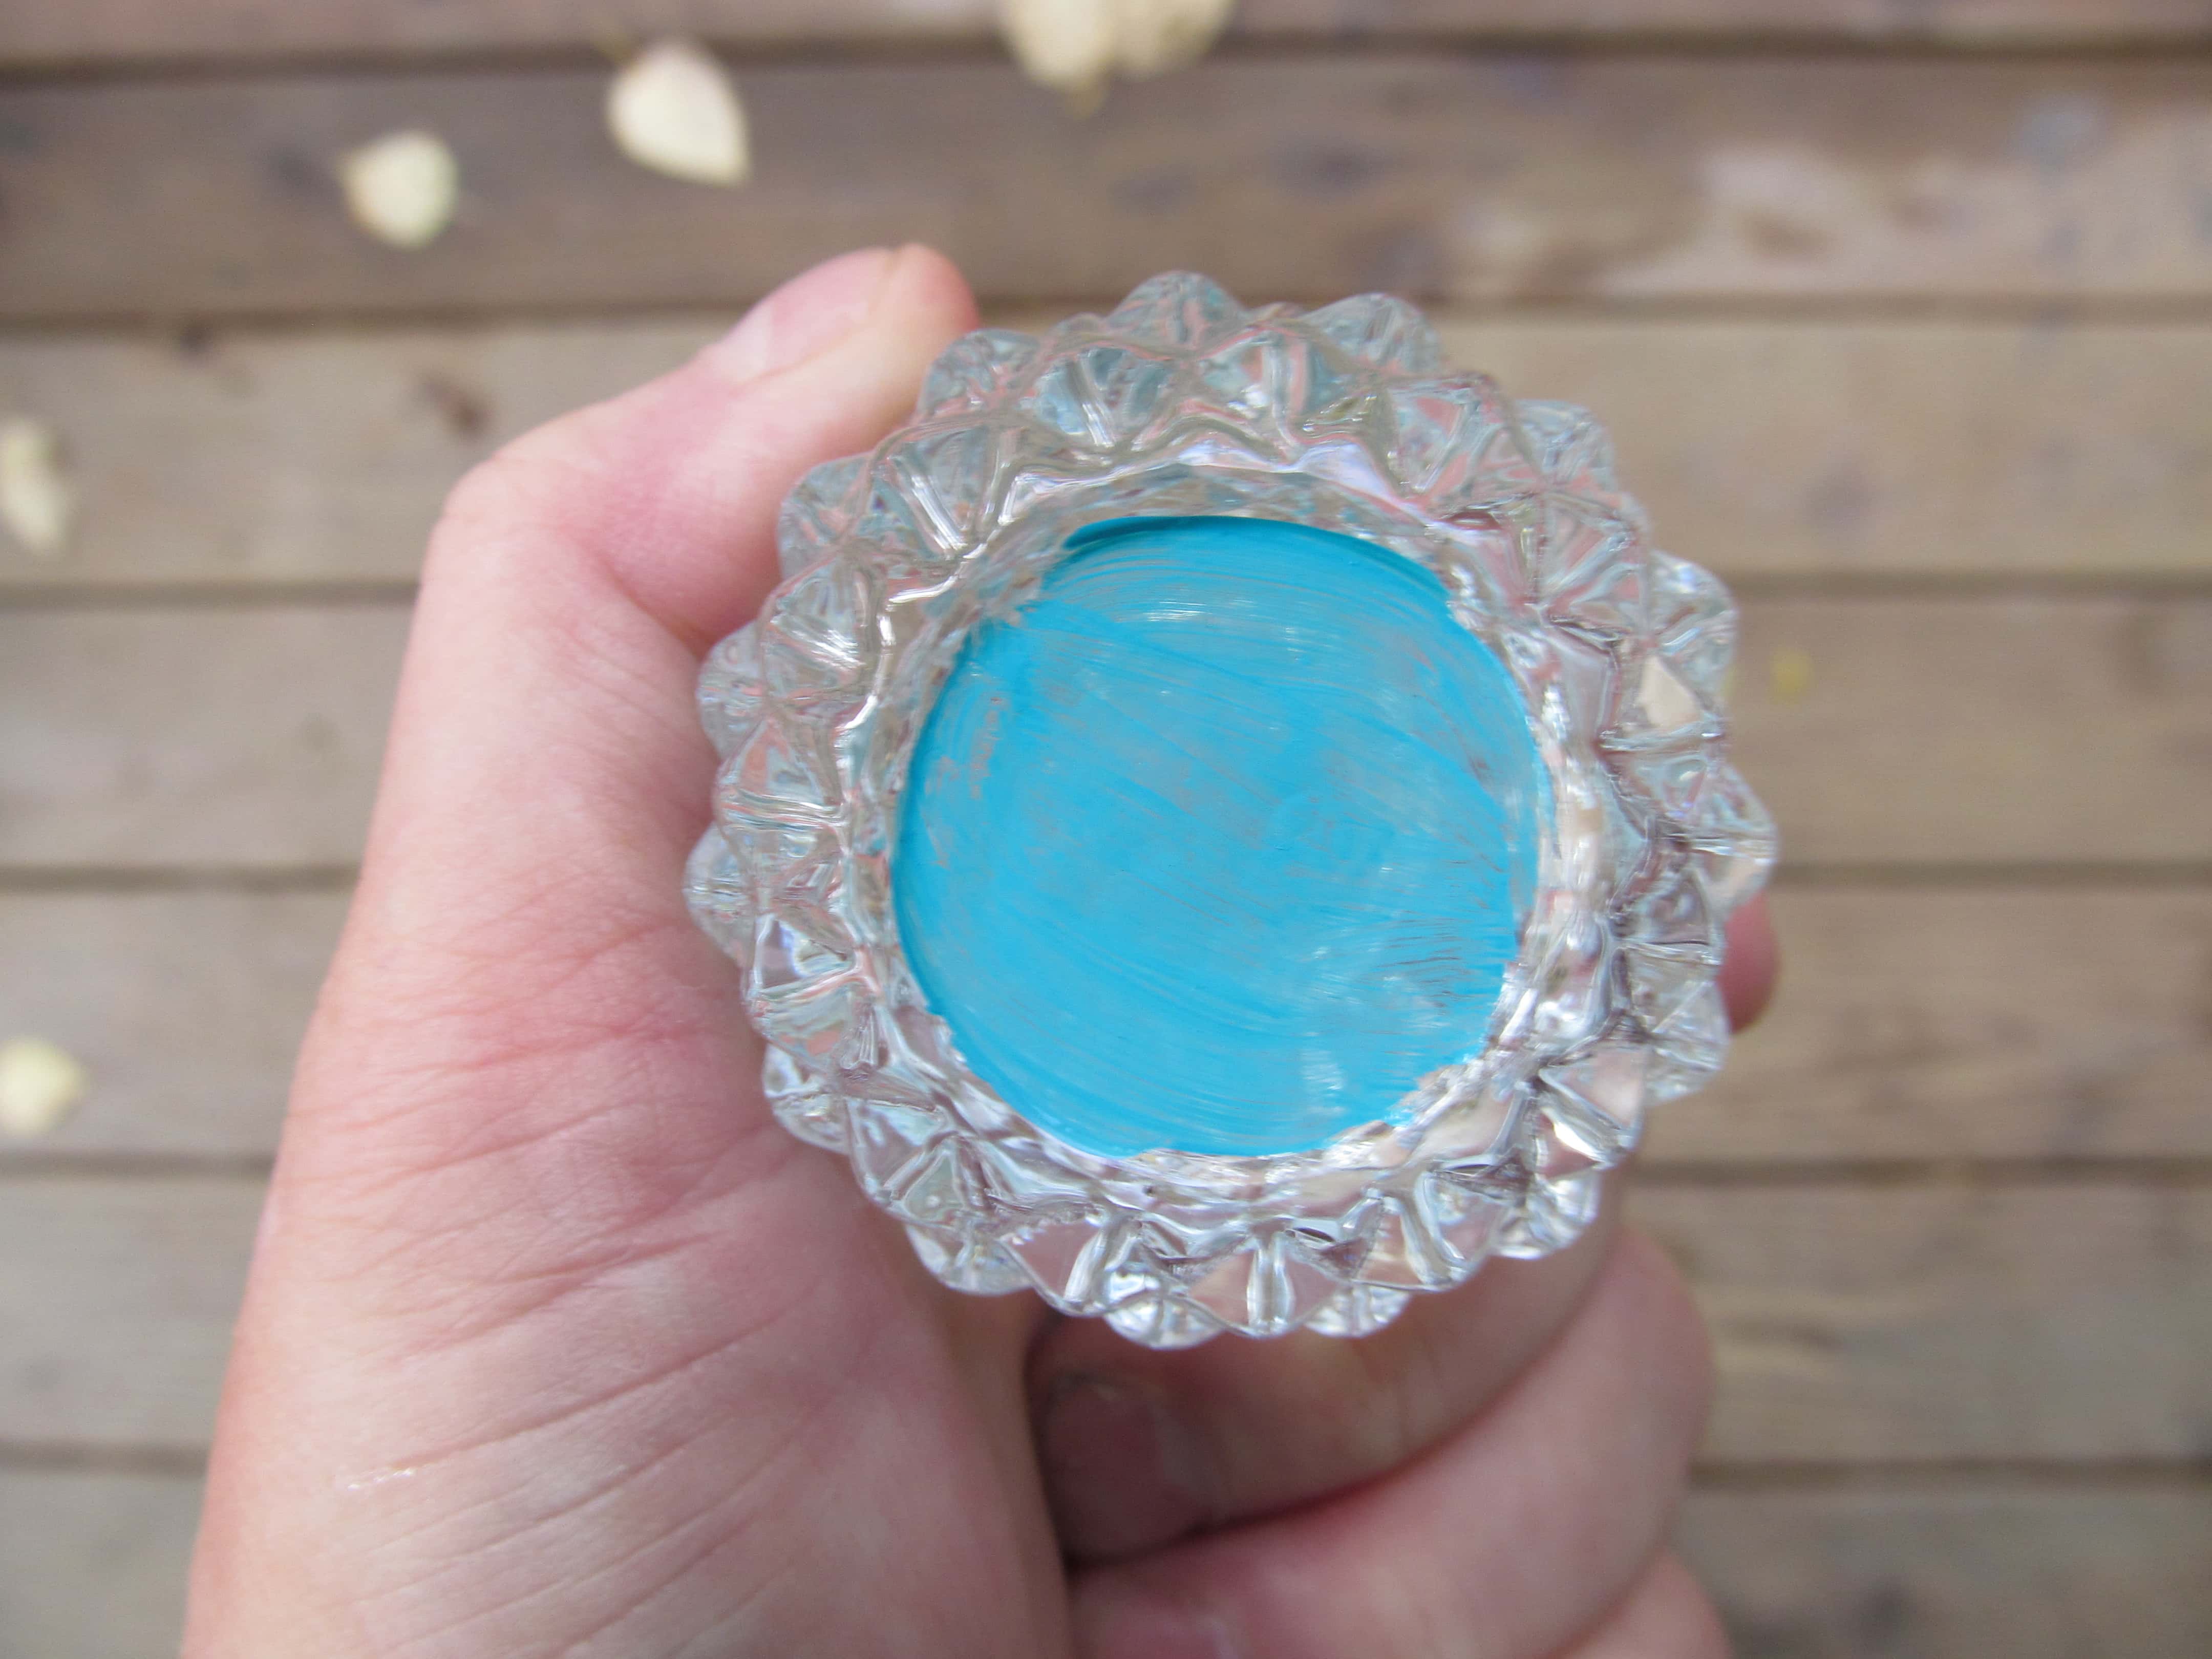  Gemalter Boden eines Kerzenständers aus geschliffenem Glas mit blauer Farbe. Es reflektiert die Farbe auf dem ganzen Glas, wodurch das klare Glas natürlich blau aussieht.